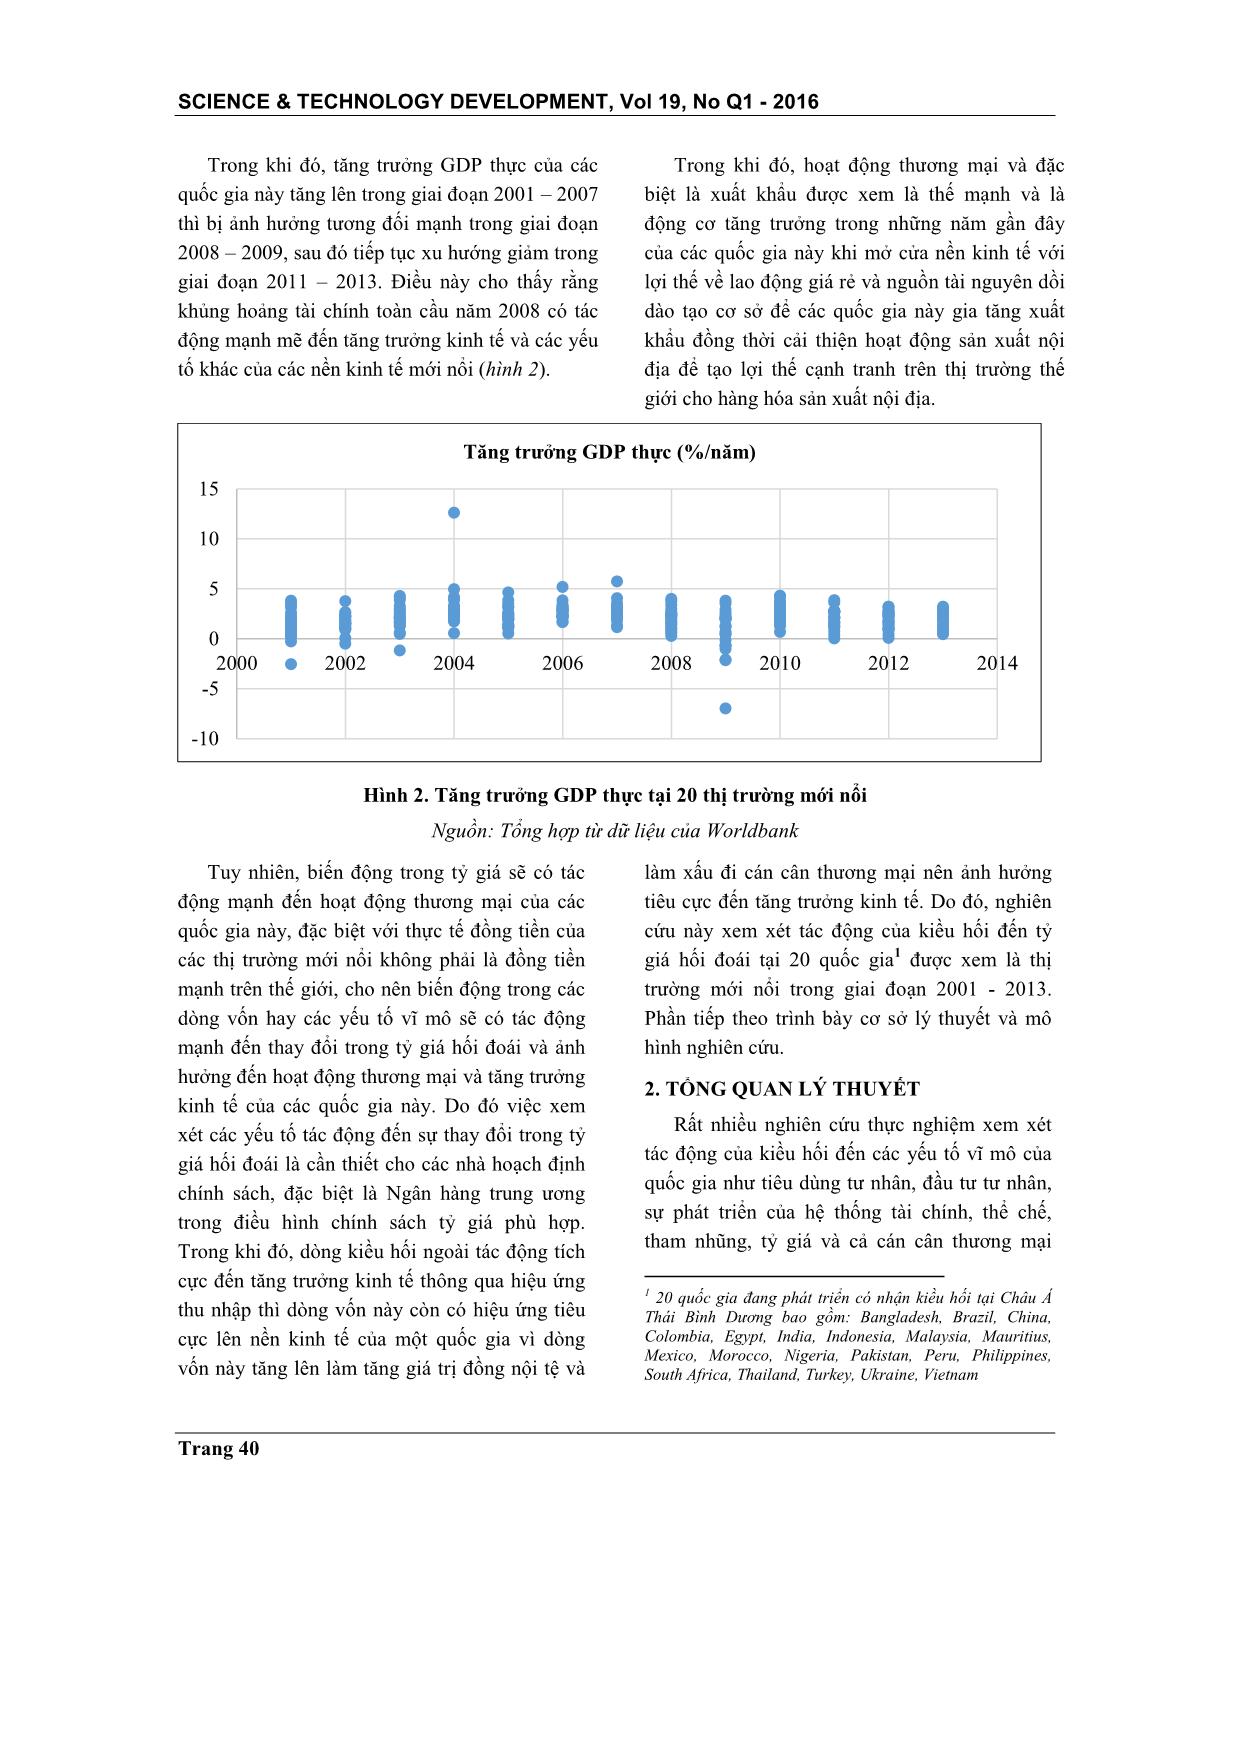 Kiều hối và tỷ giá hối đoái: Nghiên cứu thực nghiệm tại các thị trường mới nổi trang 2